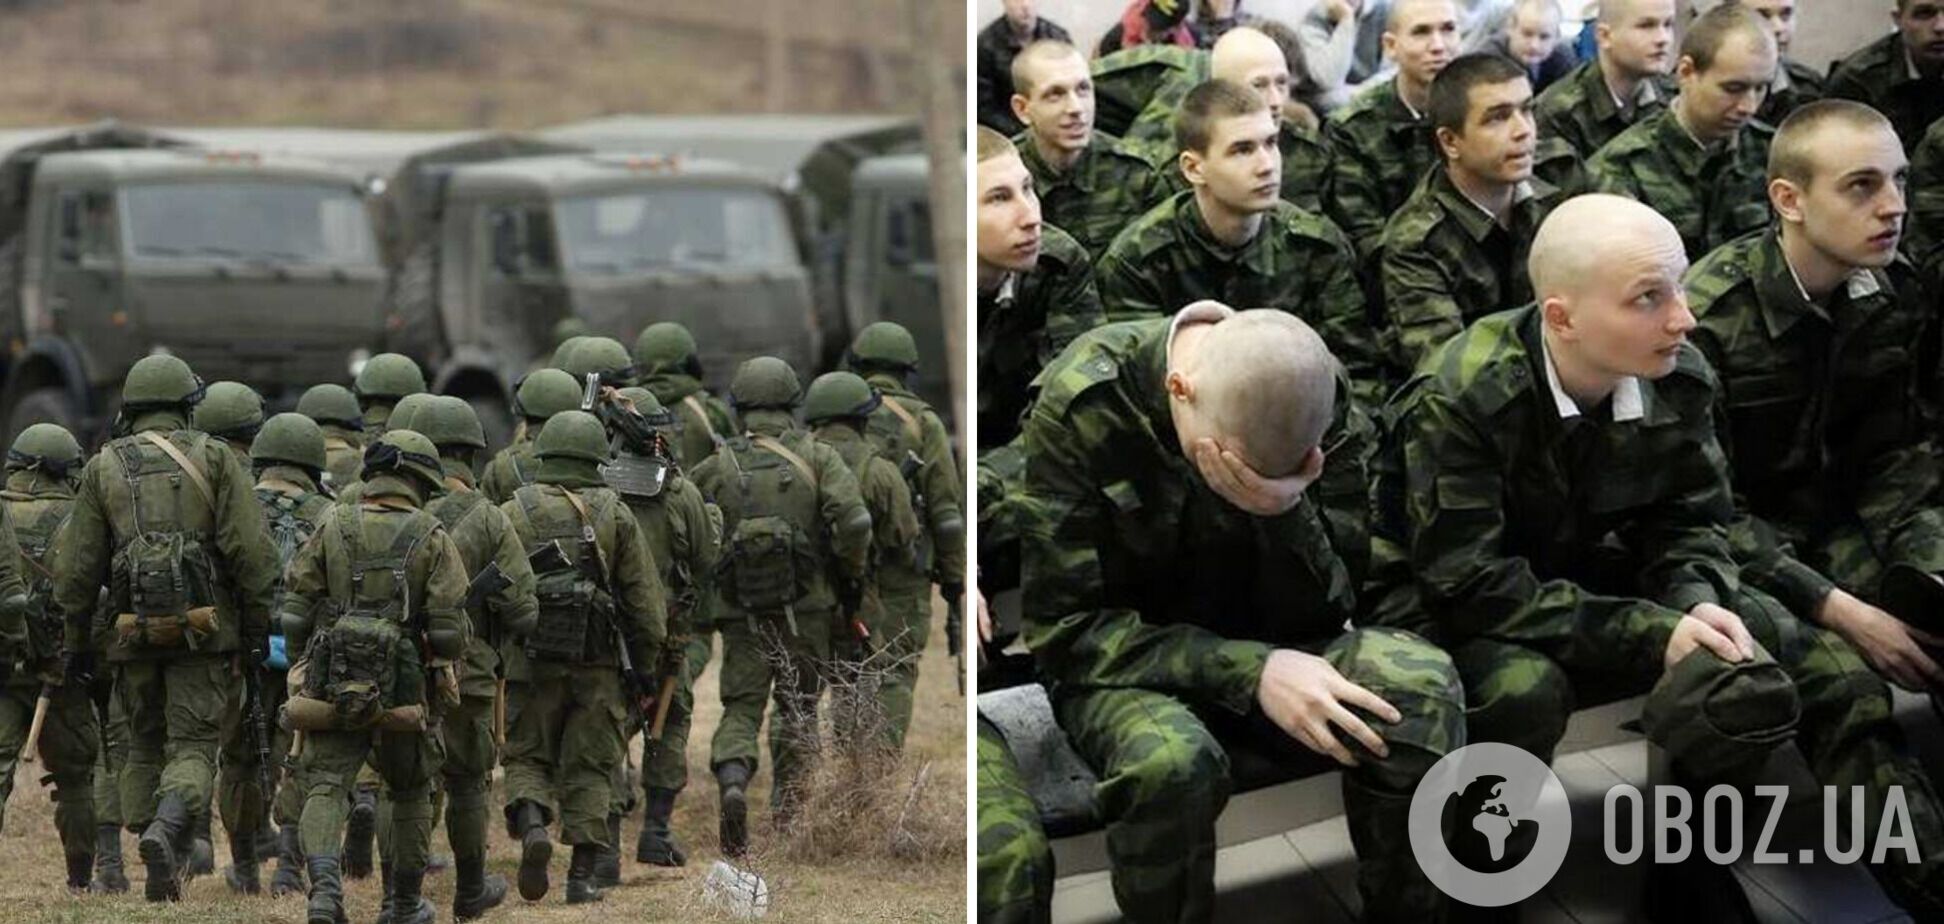 Російські спецназівці в Хабаровську масово звільняються, щоб не їхати вмирати на 'спецоперації' в Україні, – журналіст 